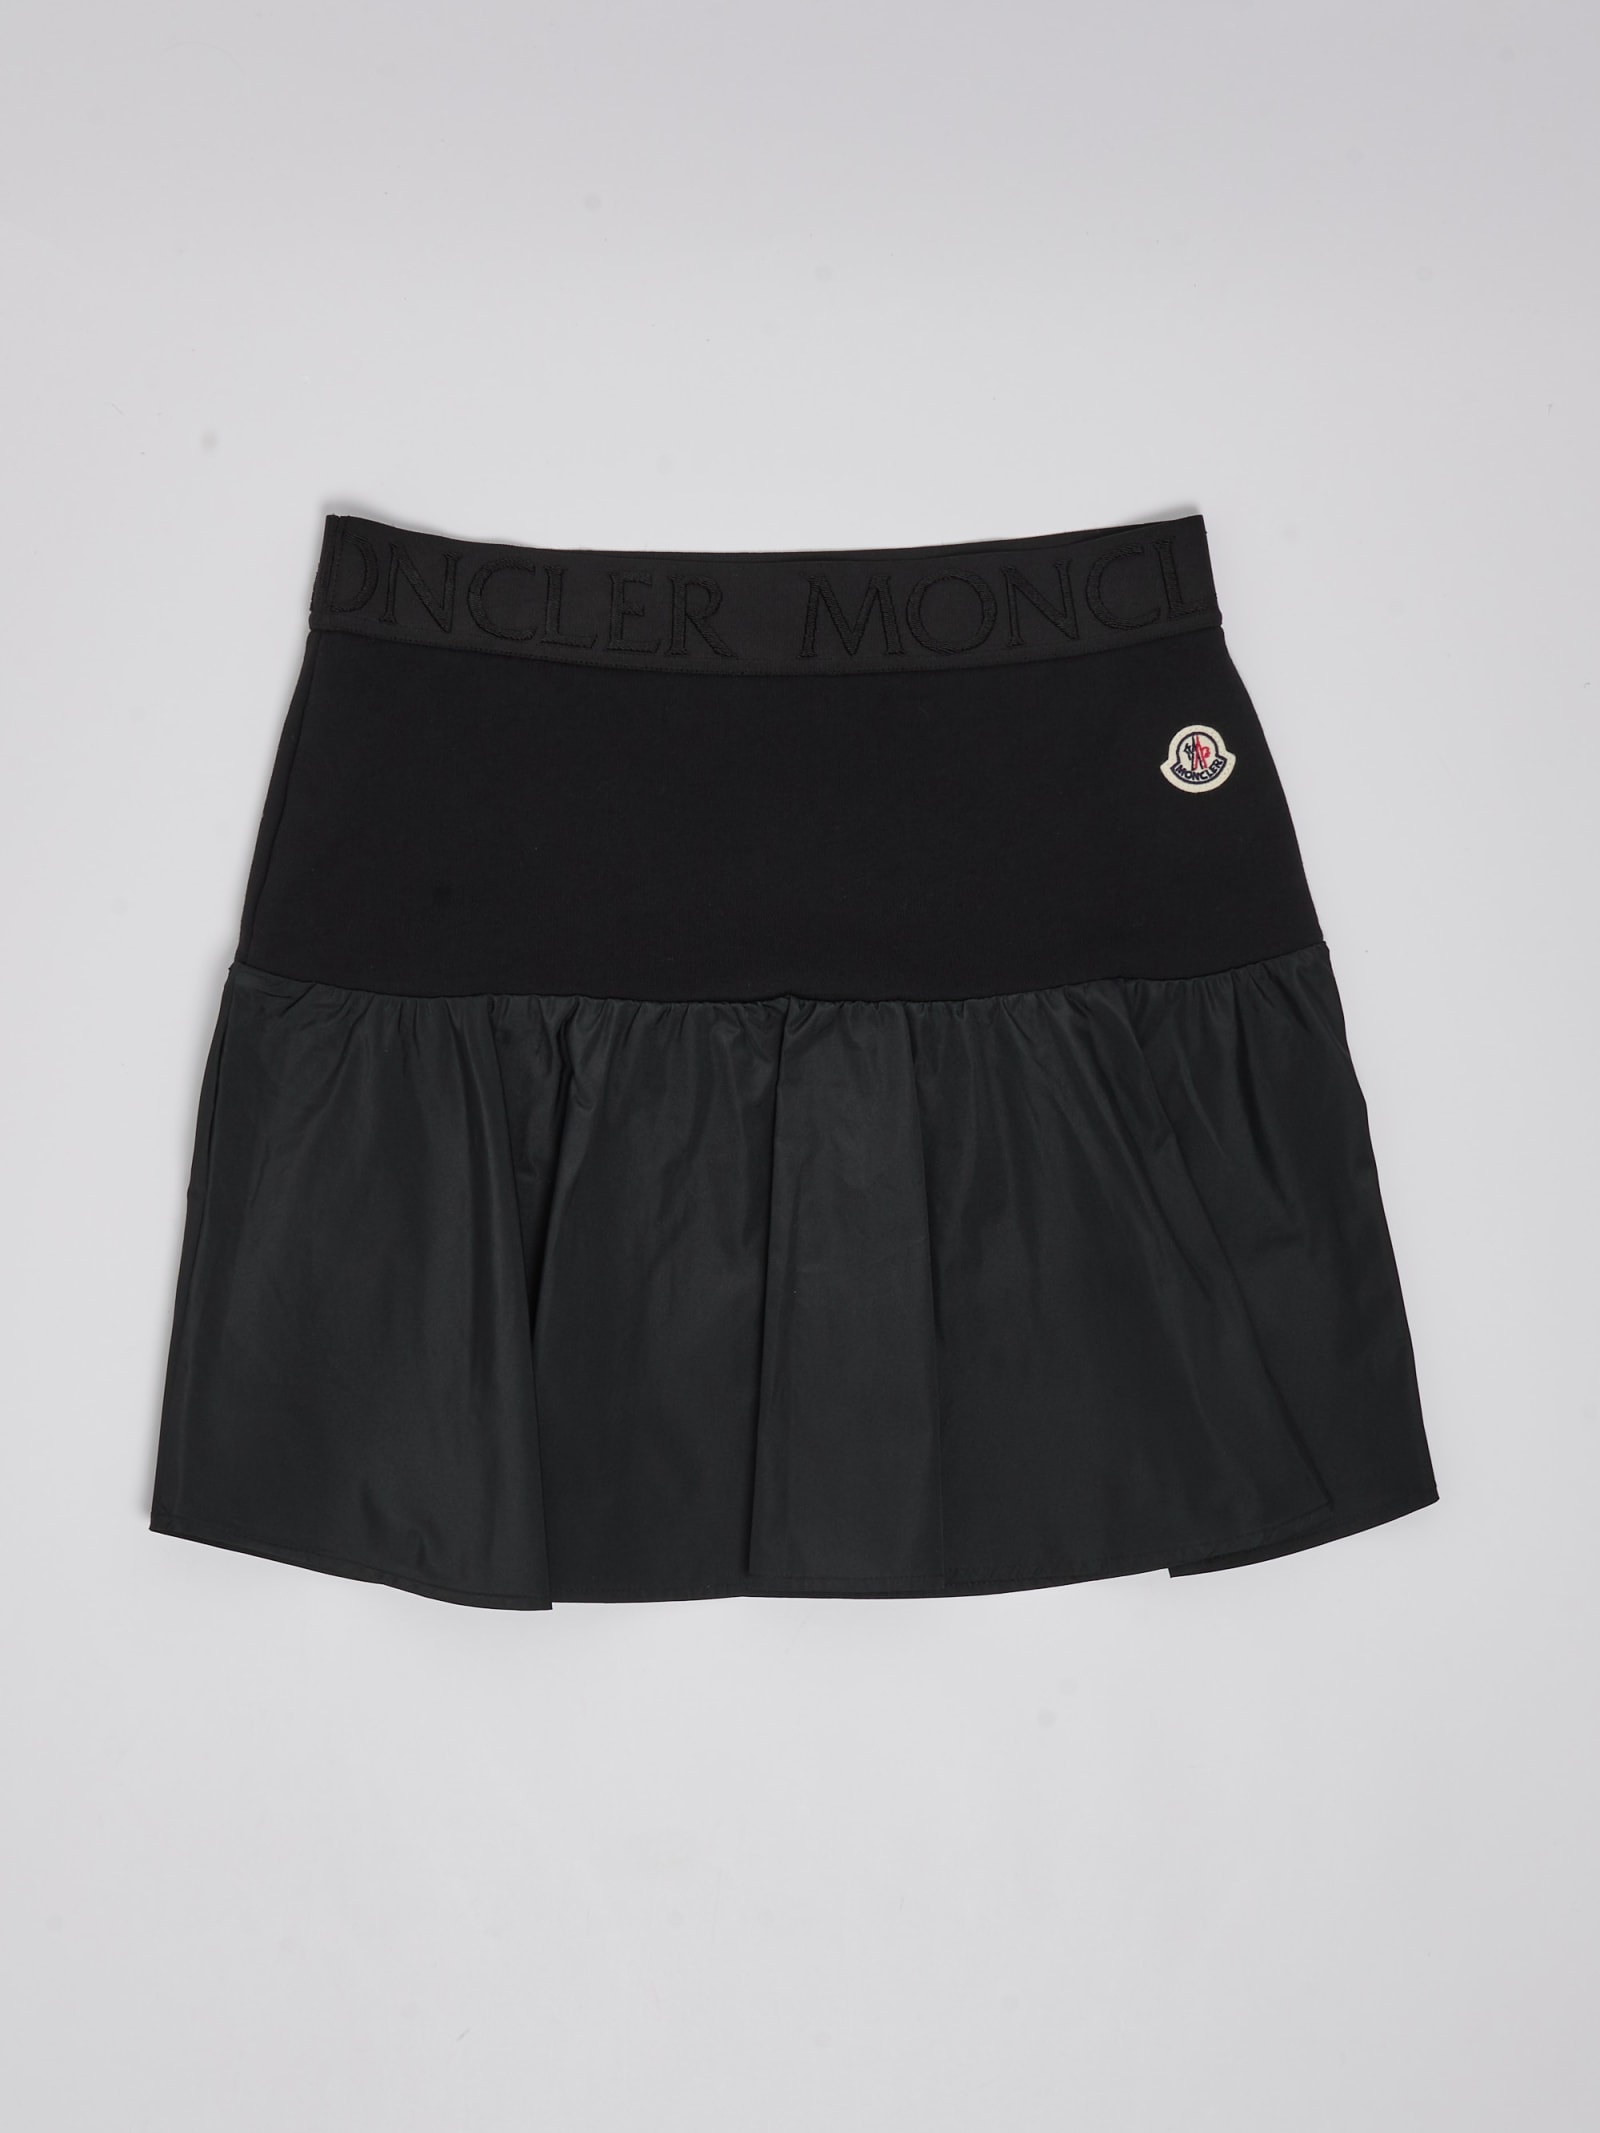 Moncler Kids' Skirt Skirt In Black